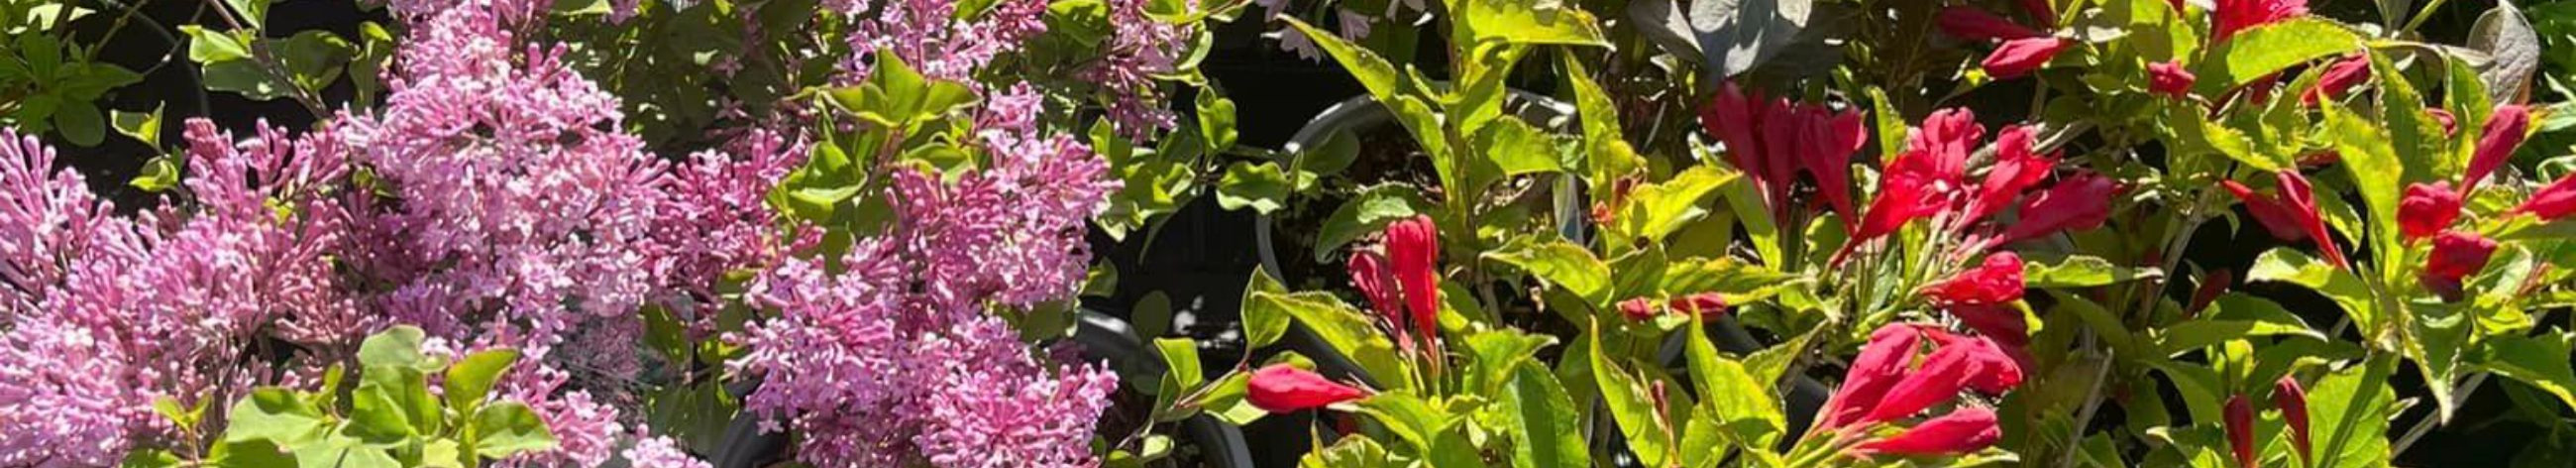 Lillekirg OÜ on spetsialiseerunud mitmekesise valiku taimede müügile ja kasvatamisele, pakkudes erksaid üheaastaseid taimi ja püsiva ilu püsikuid, mis rikastavad nii kodu kui ka kontorit.